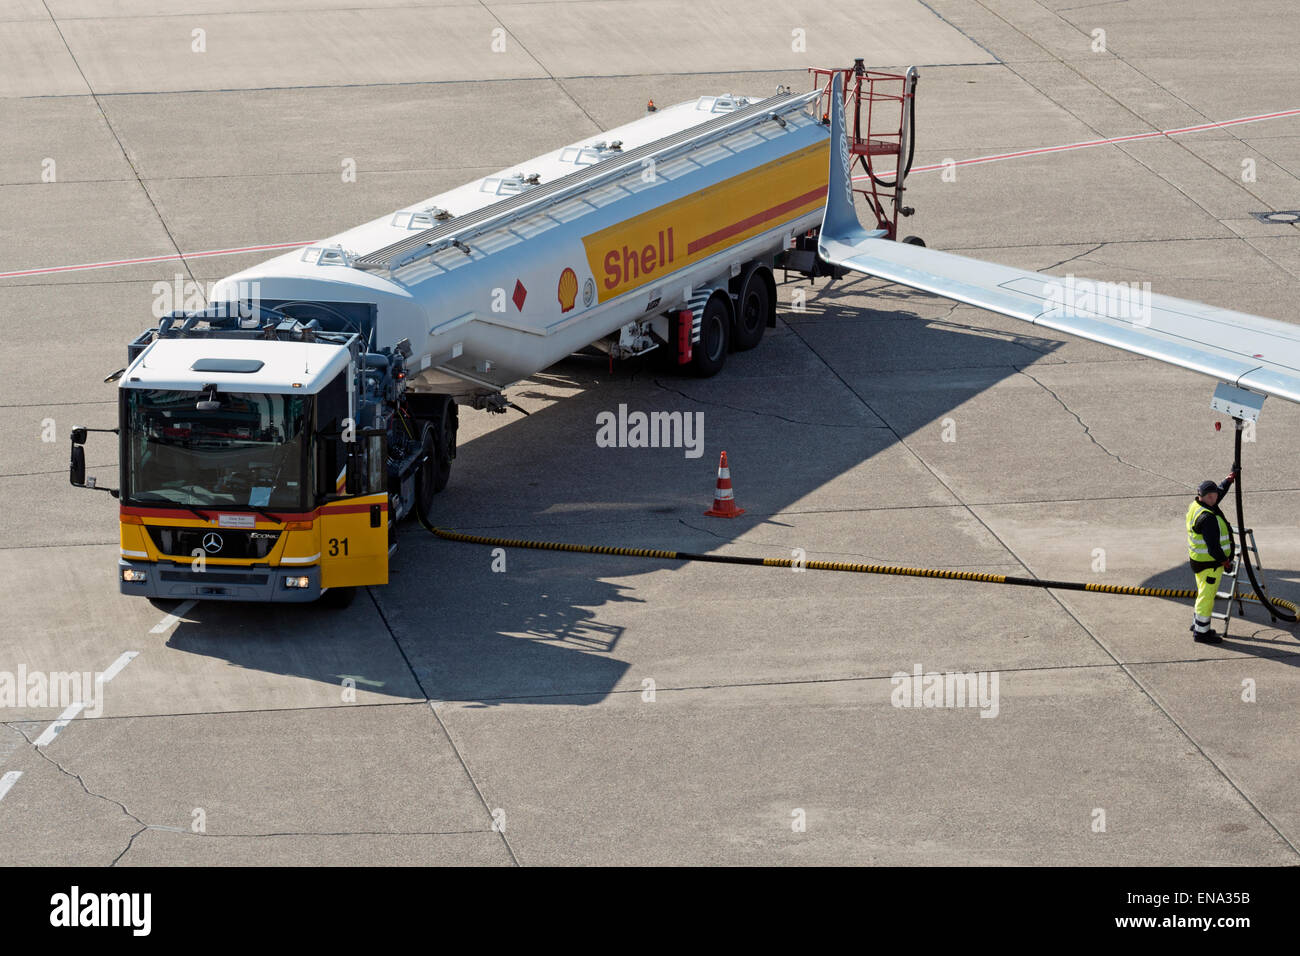 Camion-citerne de carburant Shell Aviation avions de ravitaillement à l'aéroport de Düsseldorf Allemagne Banque D'Images